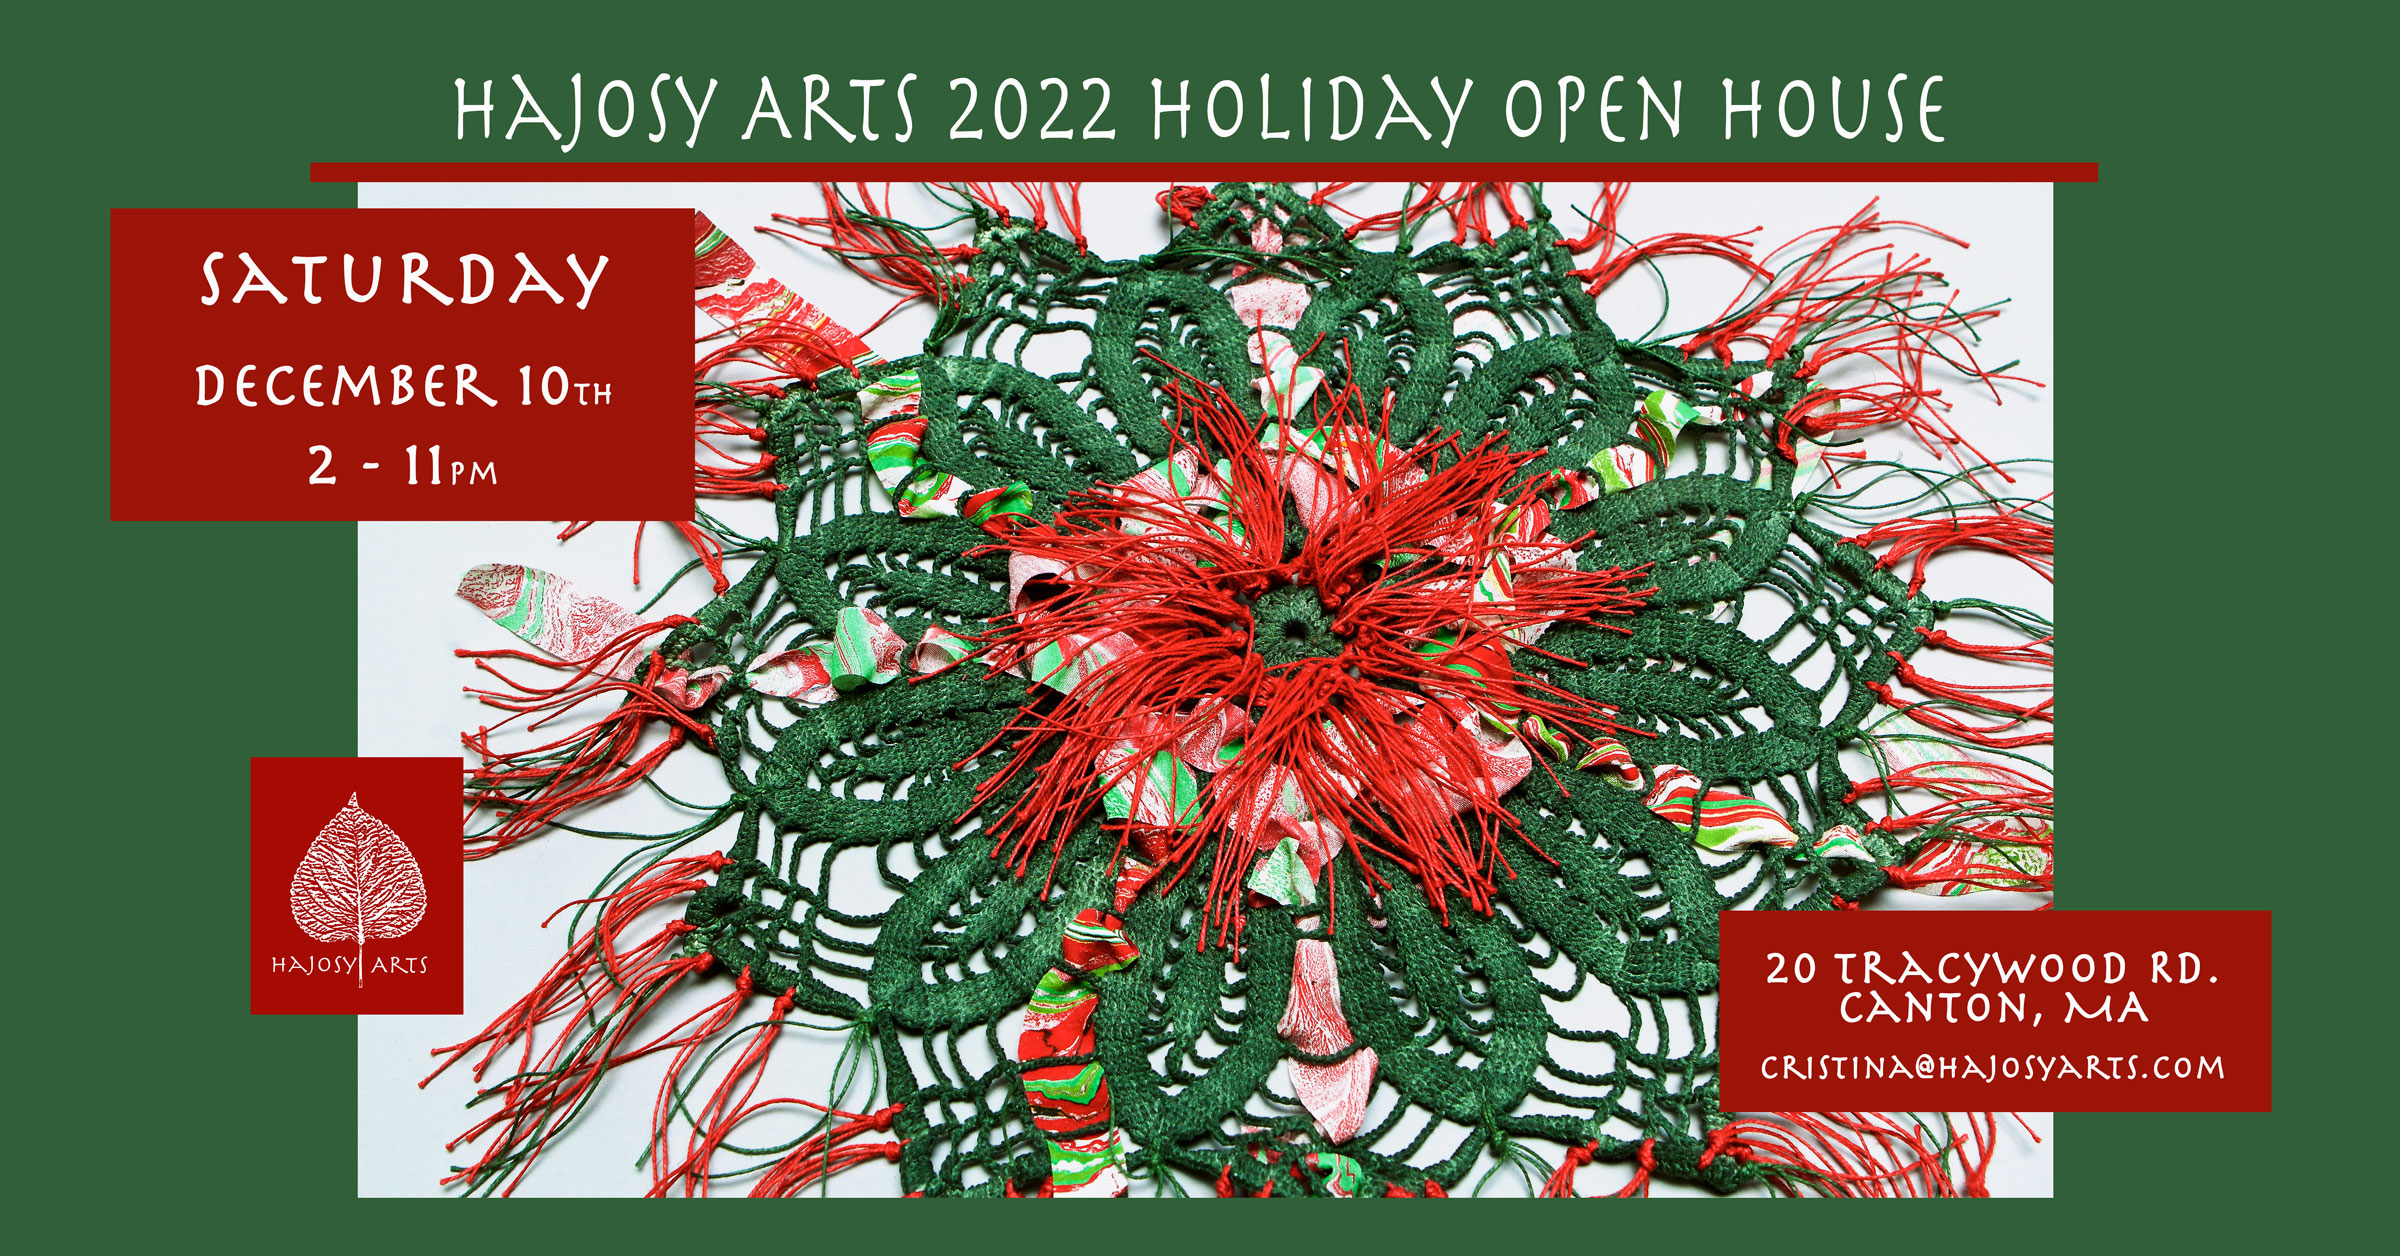 The invitation for Cristina Hajosy's 2022 Hajosy Arts Holiday Open House on December 10, 2022